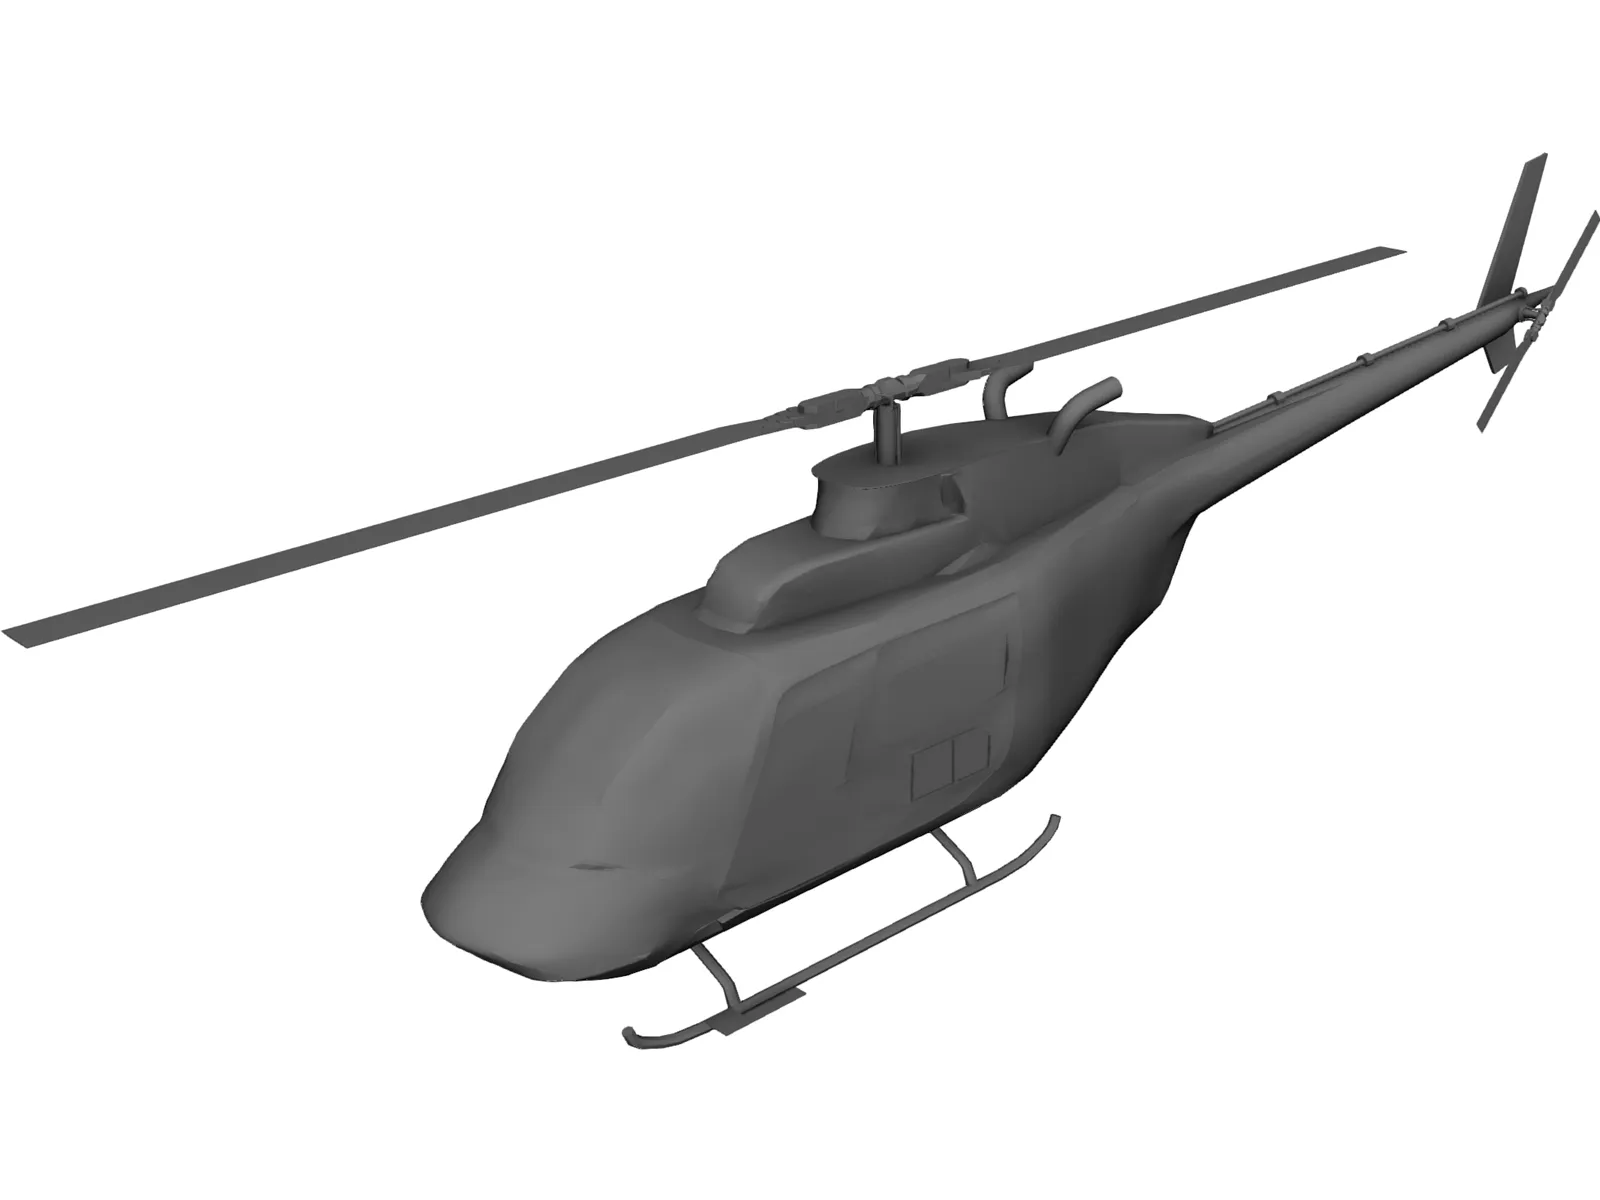 Bell 206 JetRanger 3D Model